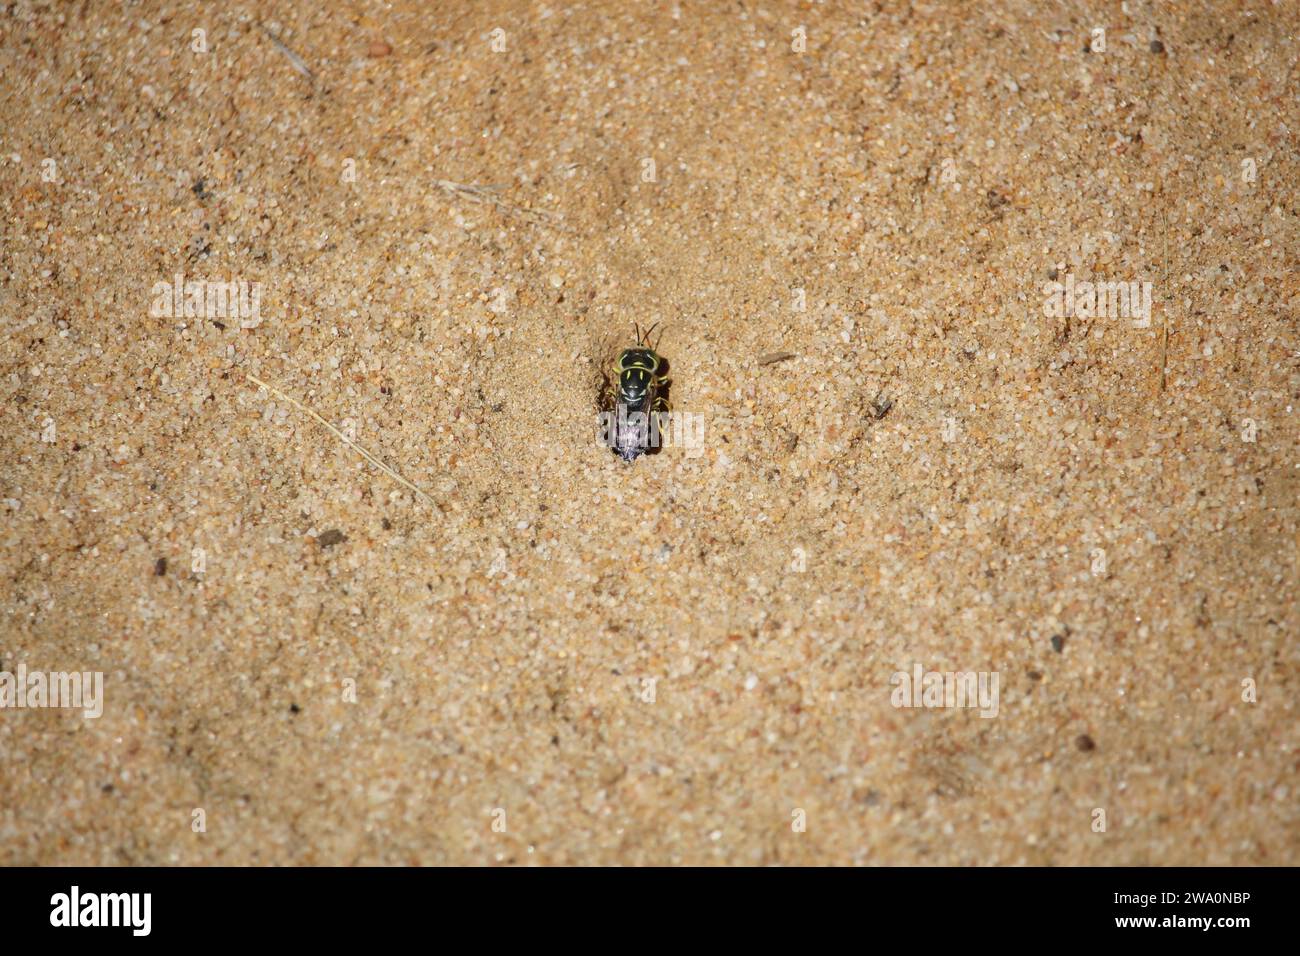 Sand Wasp (Bembix) creusant un terrier, Australie méridionale Banque D'Images